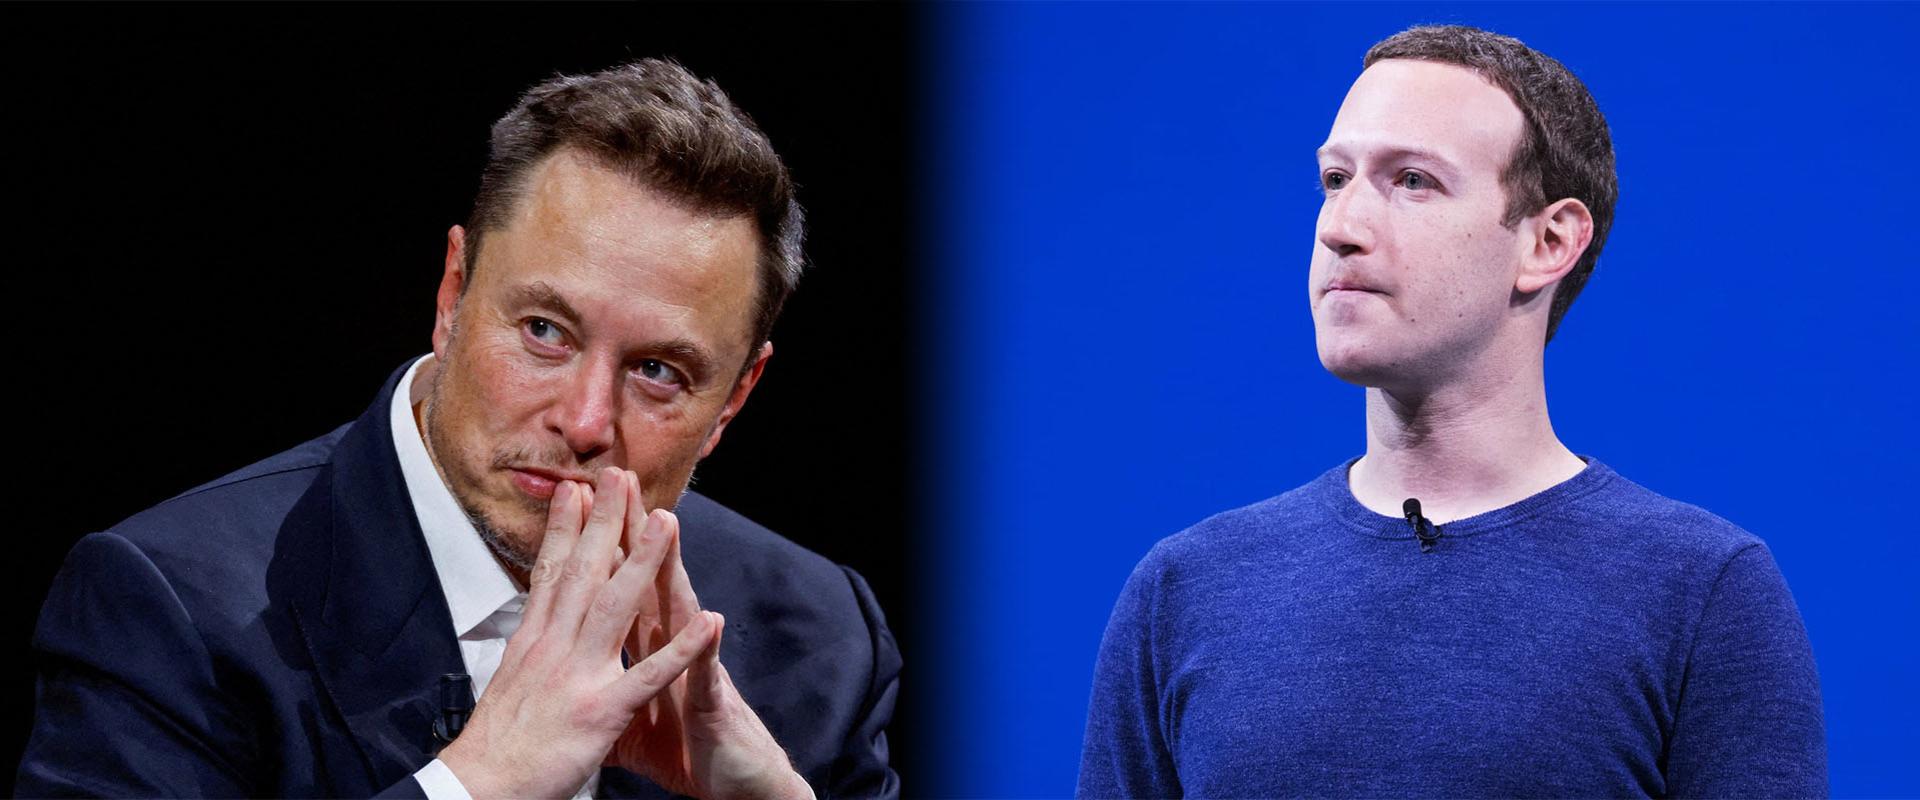 Elon Musk csinálja a fesztivált, vagy a Netflix tényleg olvassa a Facebook-üzeneteinket?